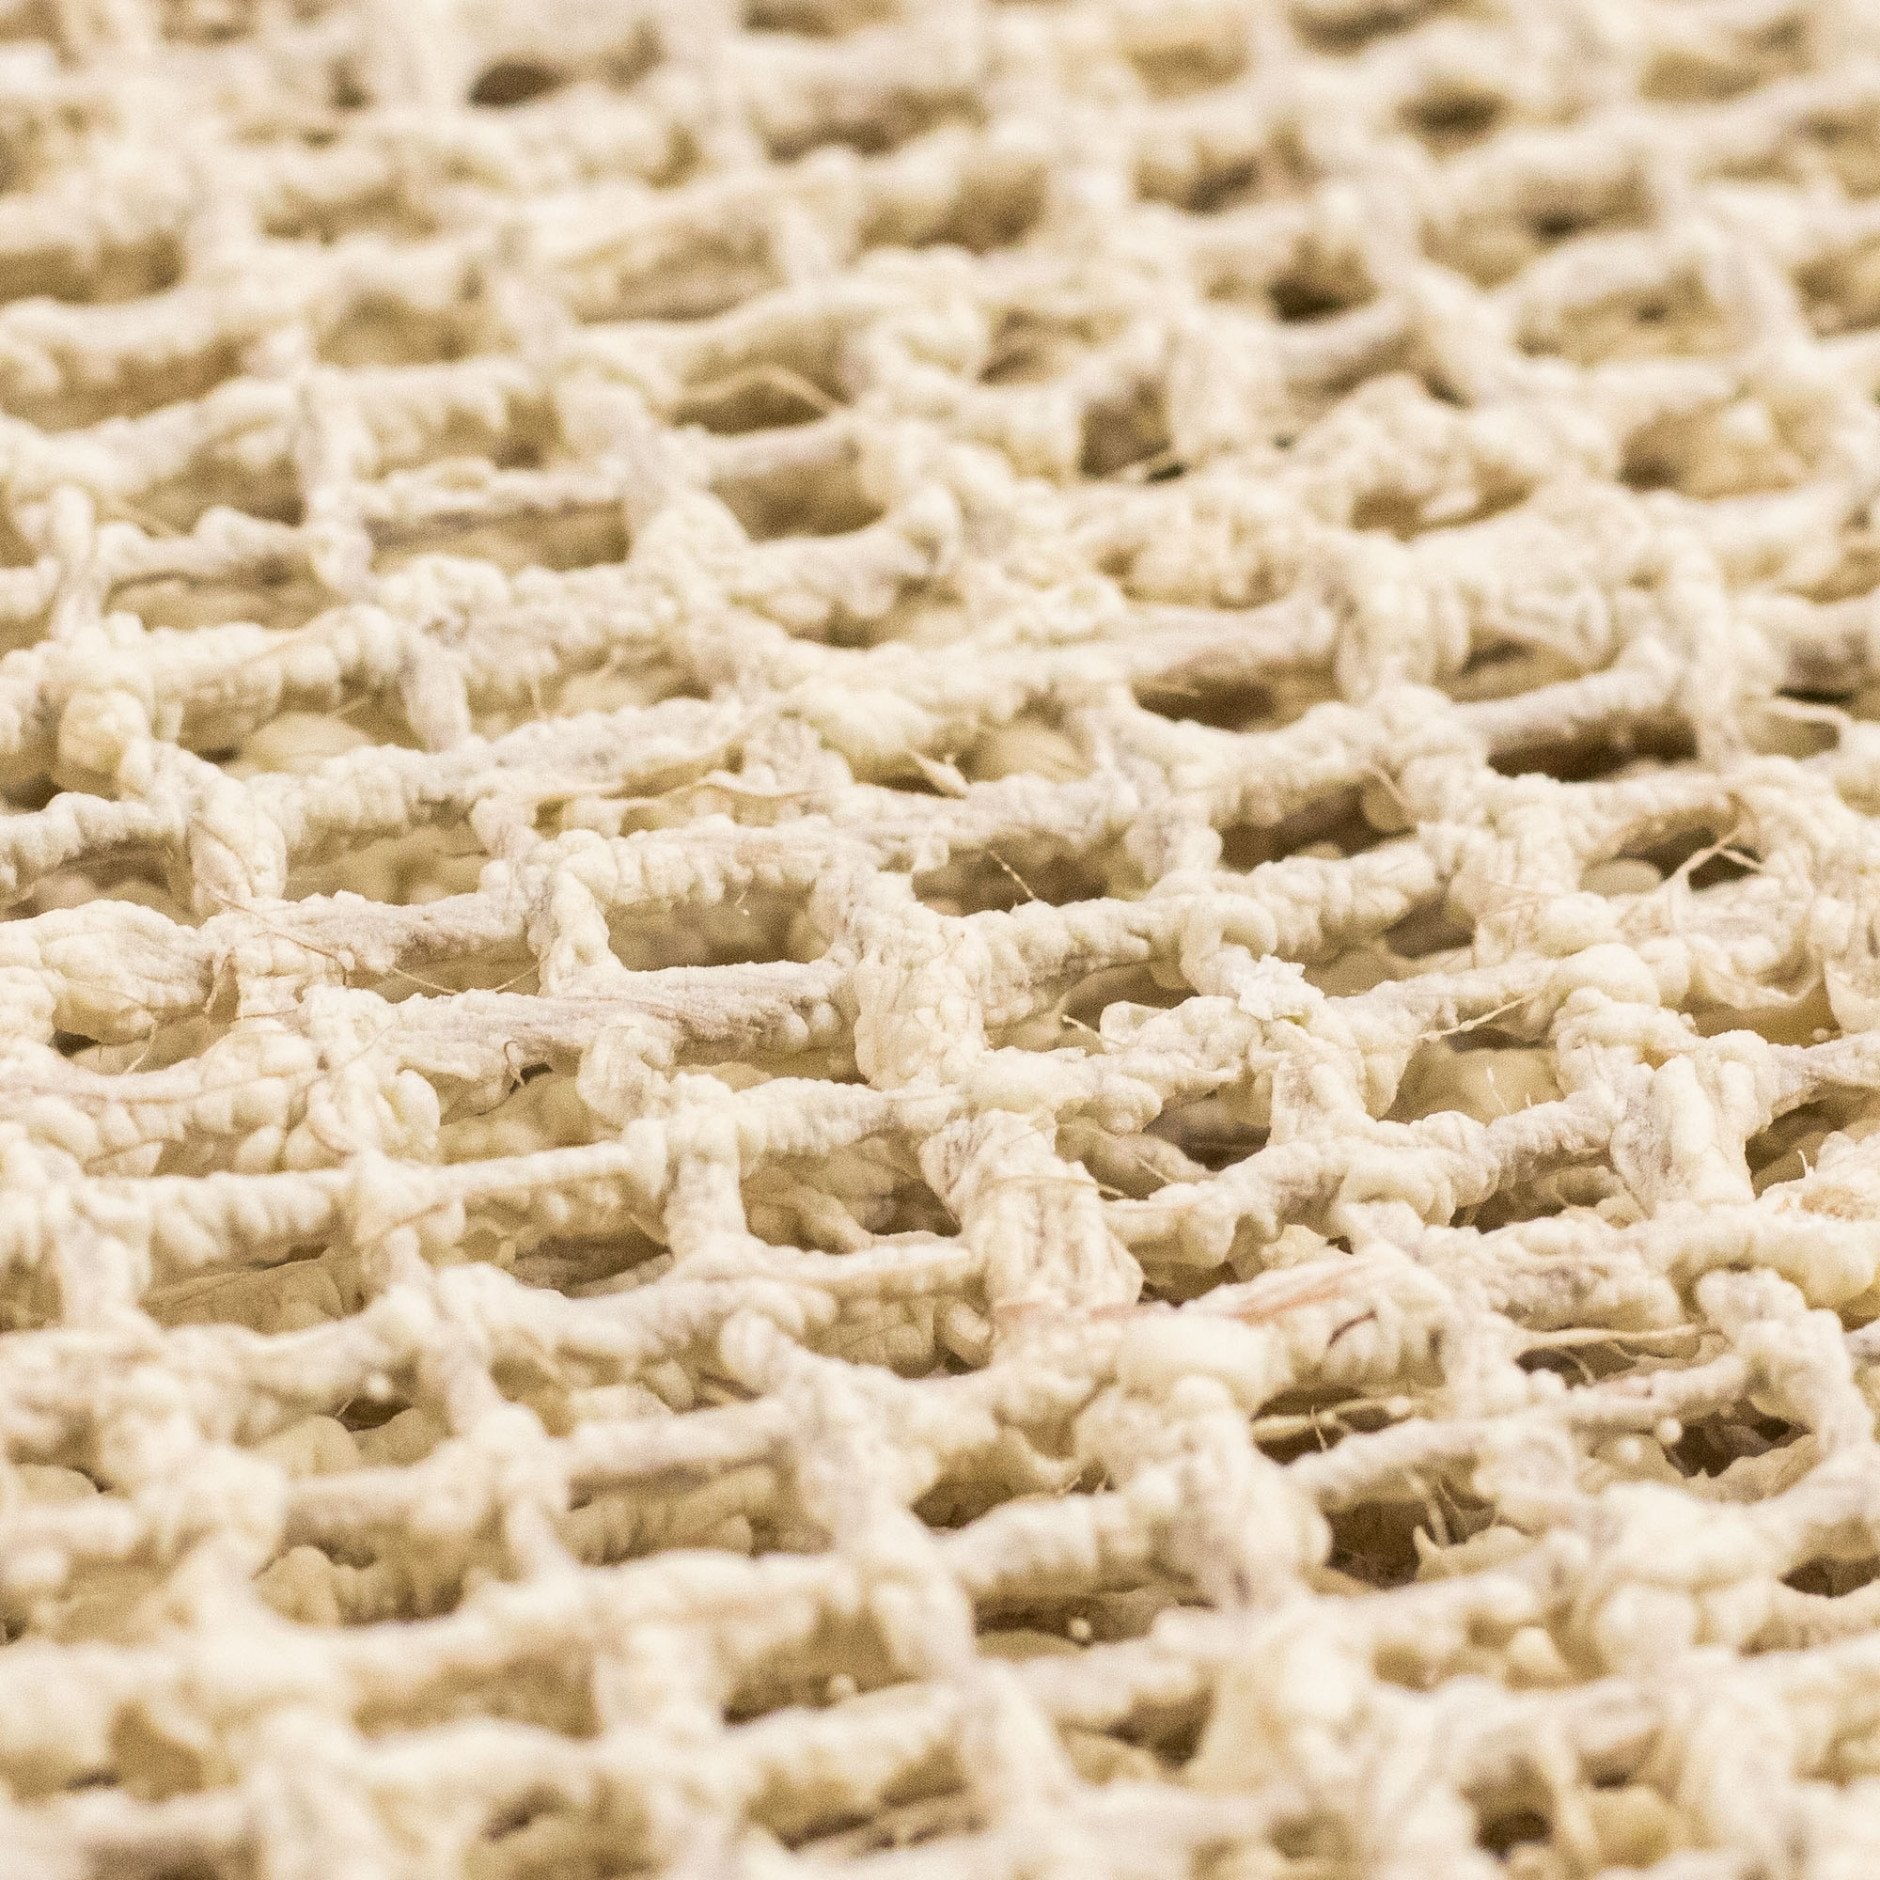 Dywany stałą przeciw poślizgowej Mat Organiczny lateks i juta, 70 x 190 cm